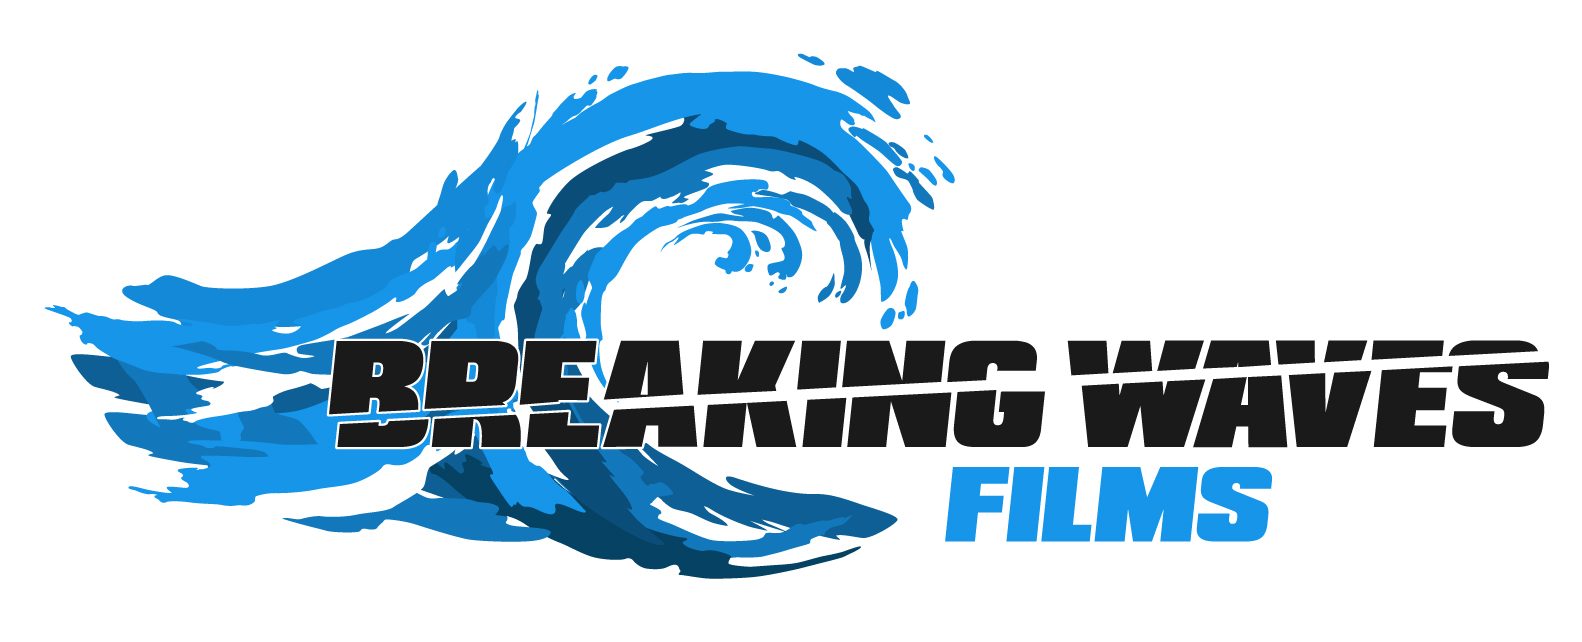 Breaking Waves Films